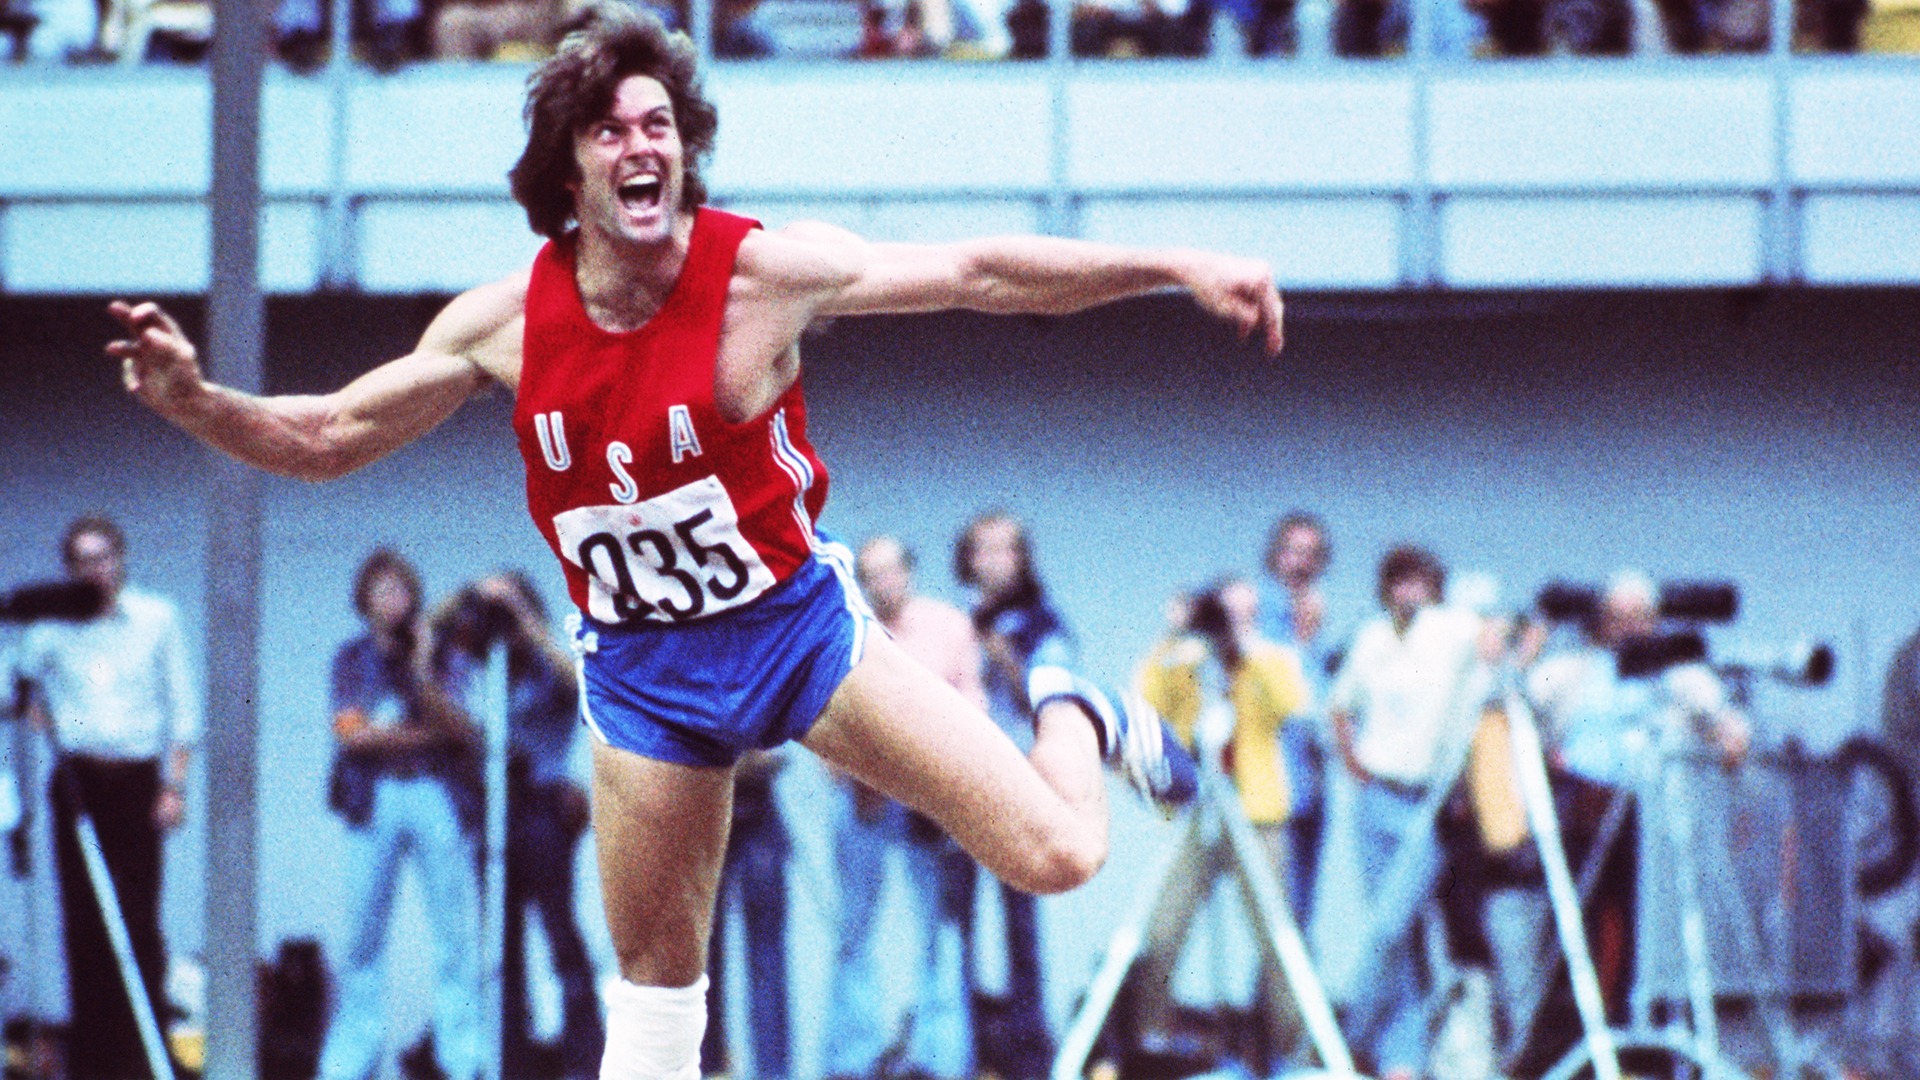 Bruce Jenner – Olympic Gold Medal Winning Decathlete